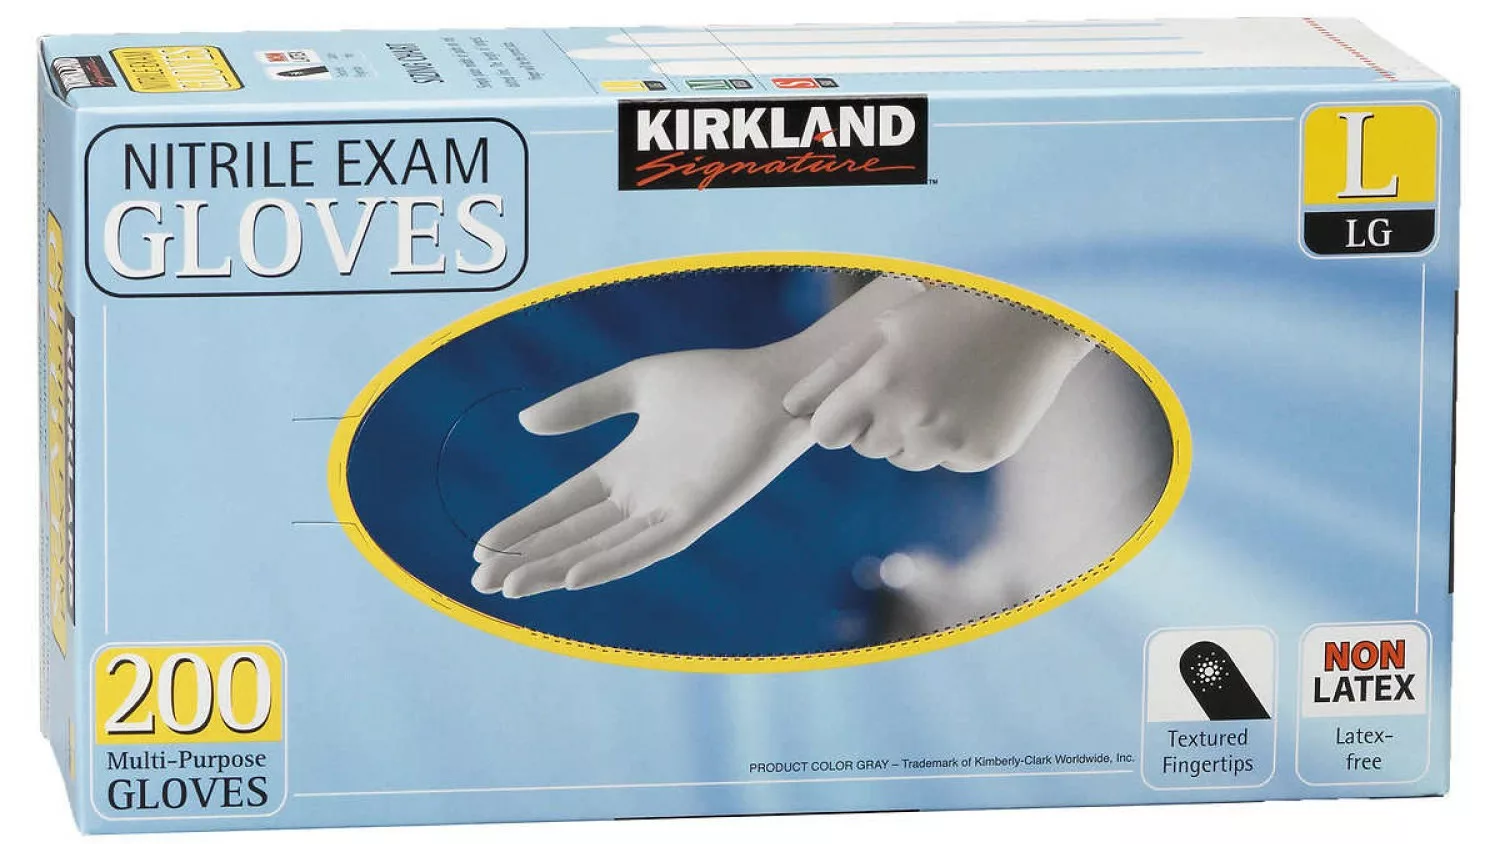 Kirkland gloves